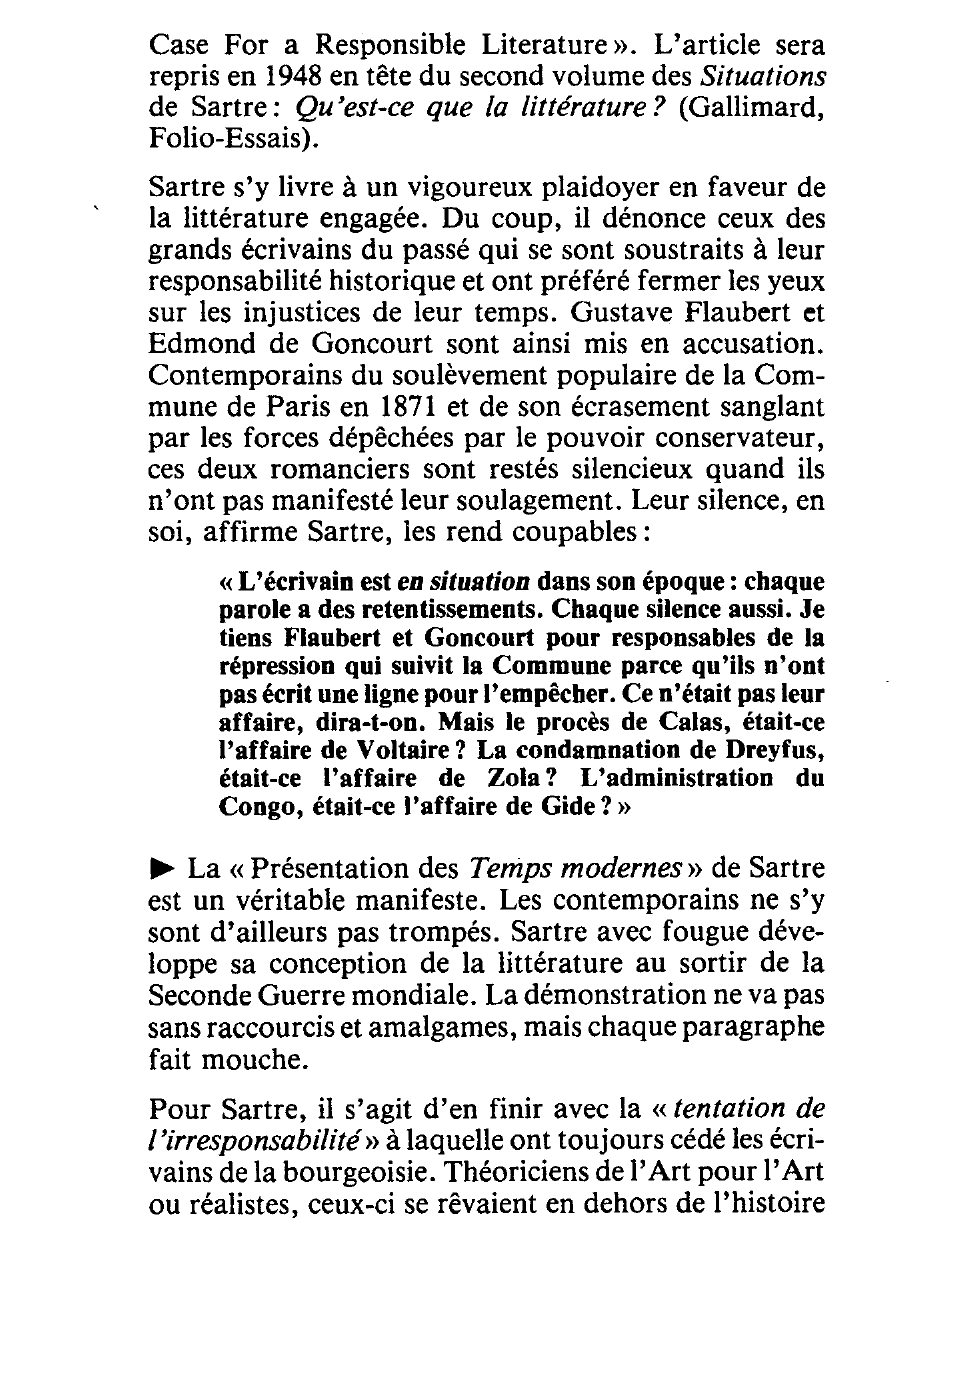 Prévisualisation du document Je tiens Flaubert et Goncourt pour responsables de la répression qui suivit la Commune parce qu’ils n’ont pas écrit une ligne pour l’empêcher.  Jean-Paul Sartre